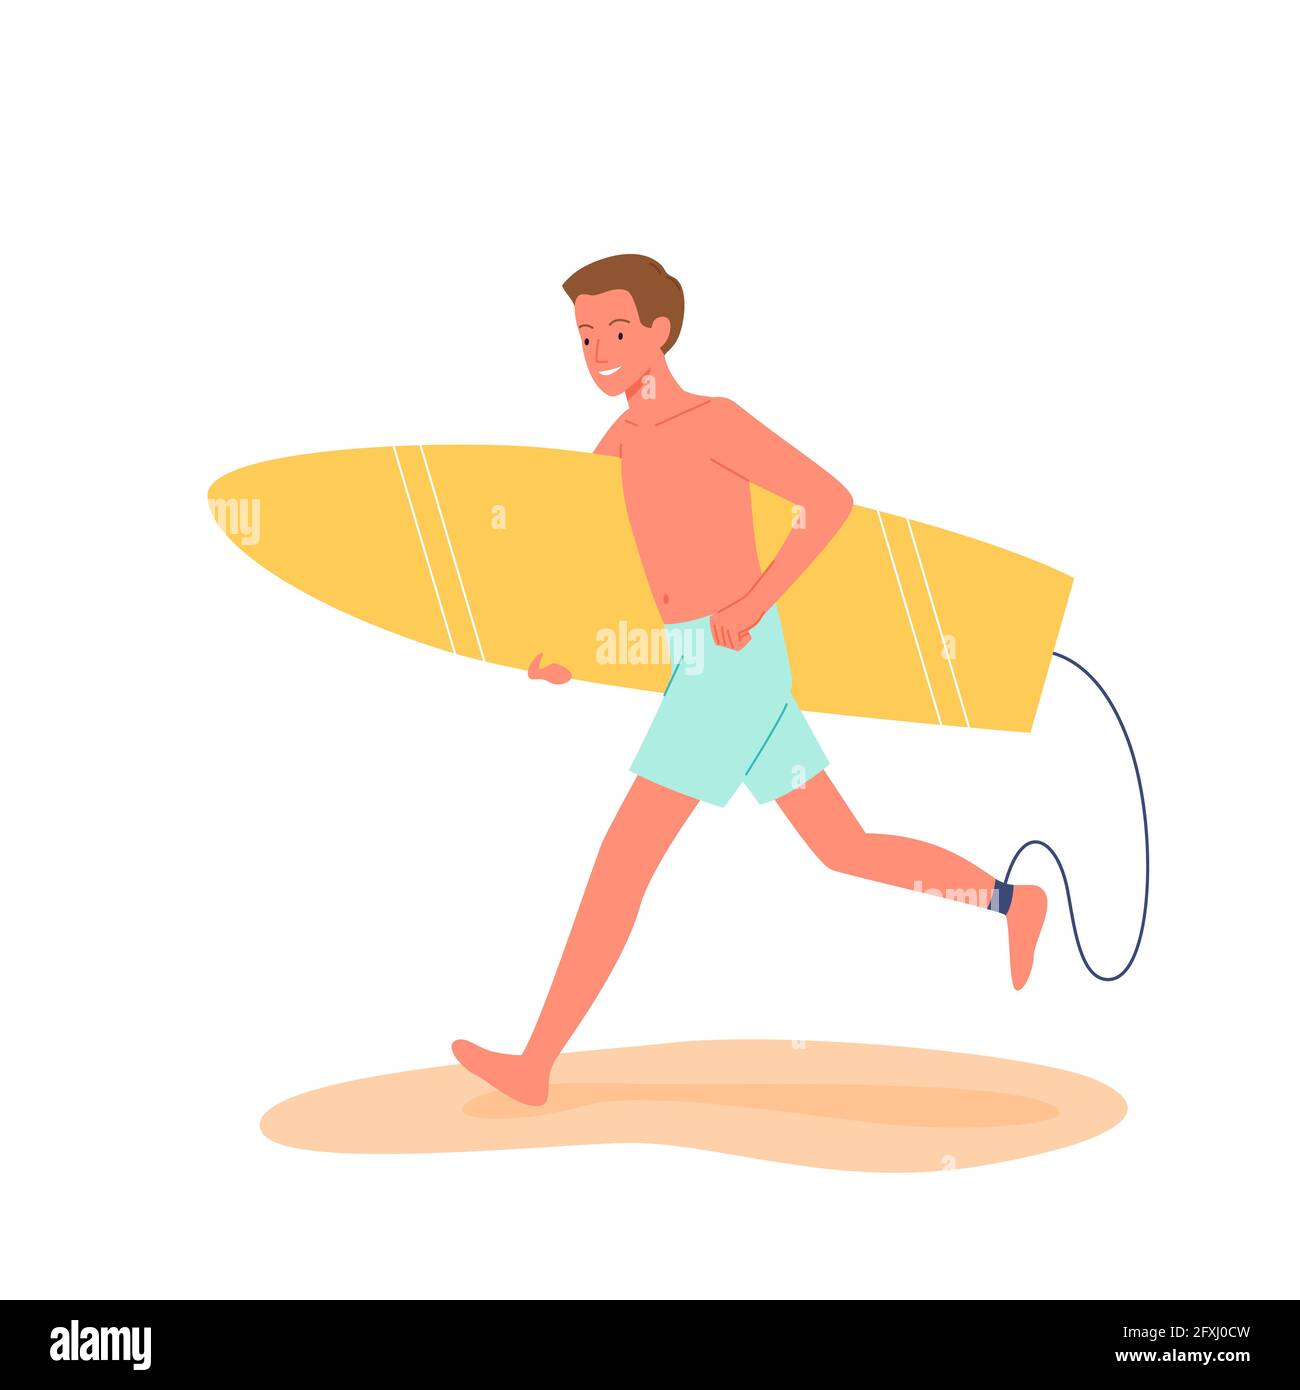 Happy Surfer läuft mit Surfbrett am tropischen Strand, Sommer Strand Reise Urlaubsszene Stock Vektor